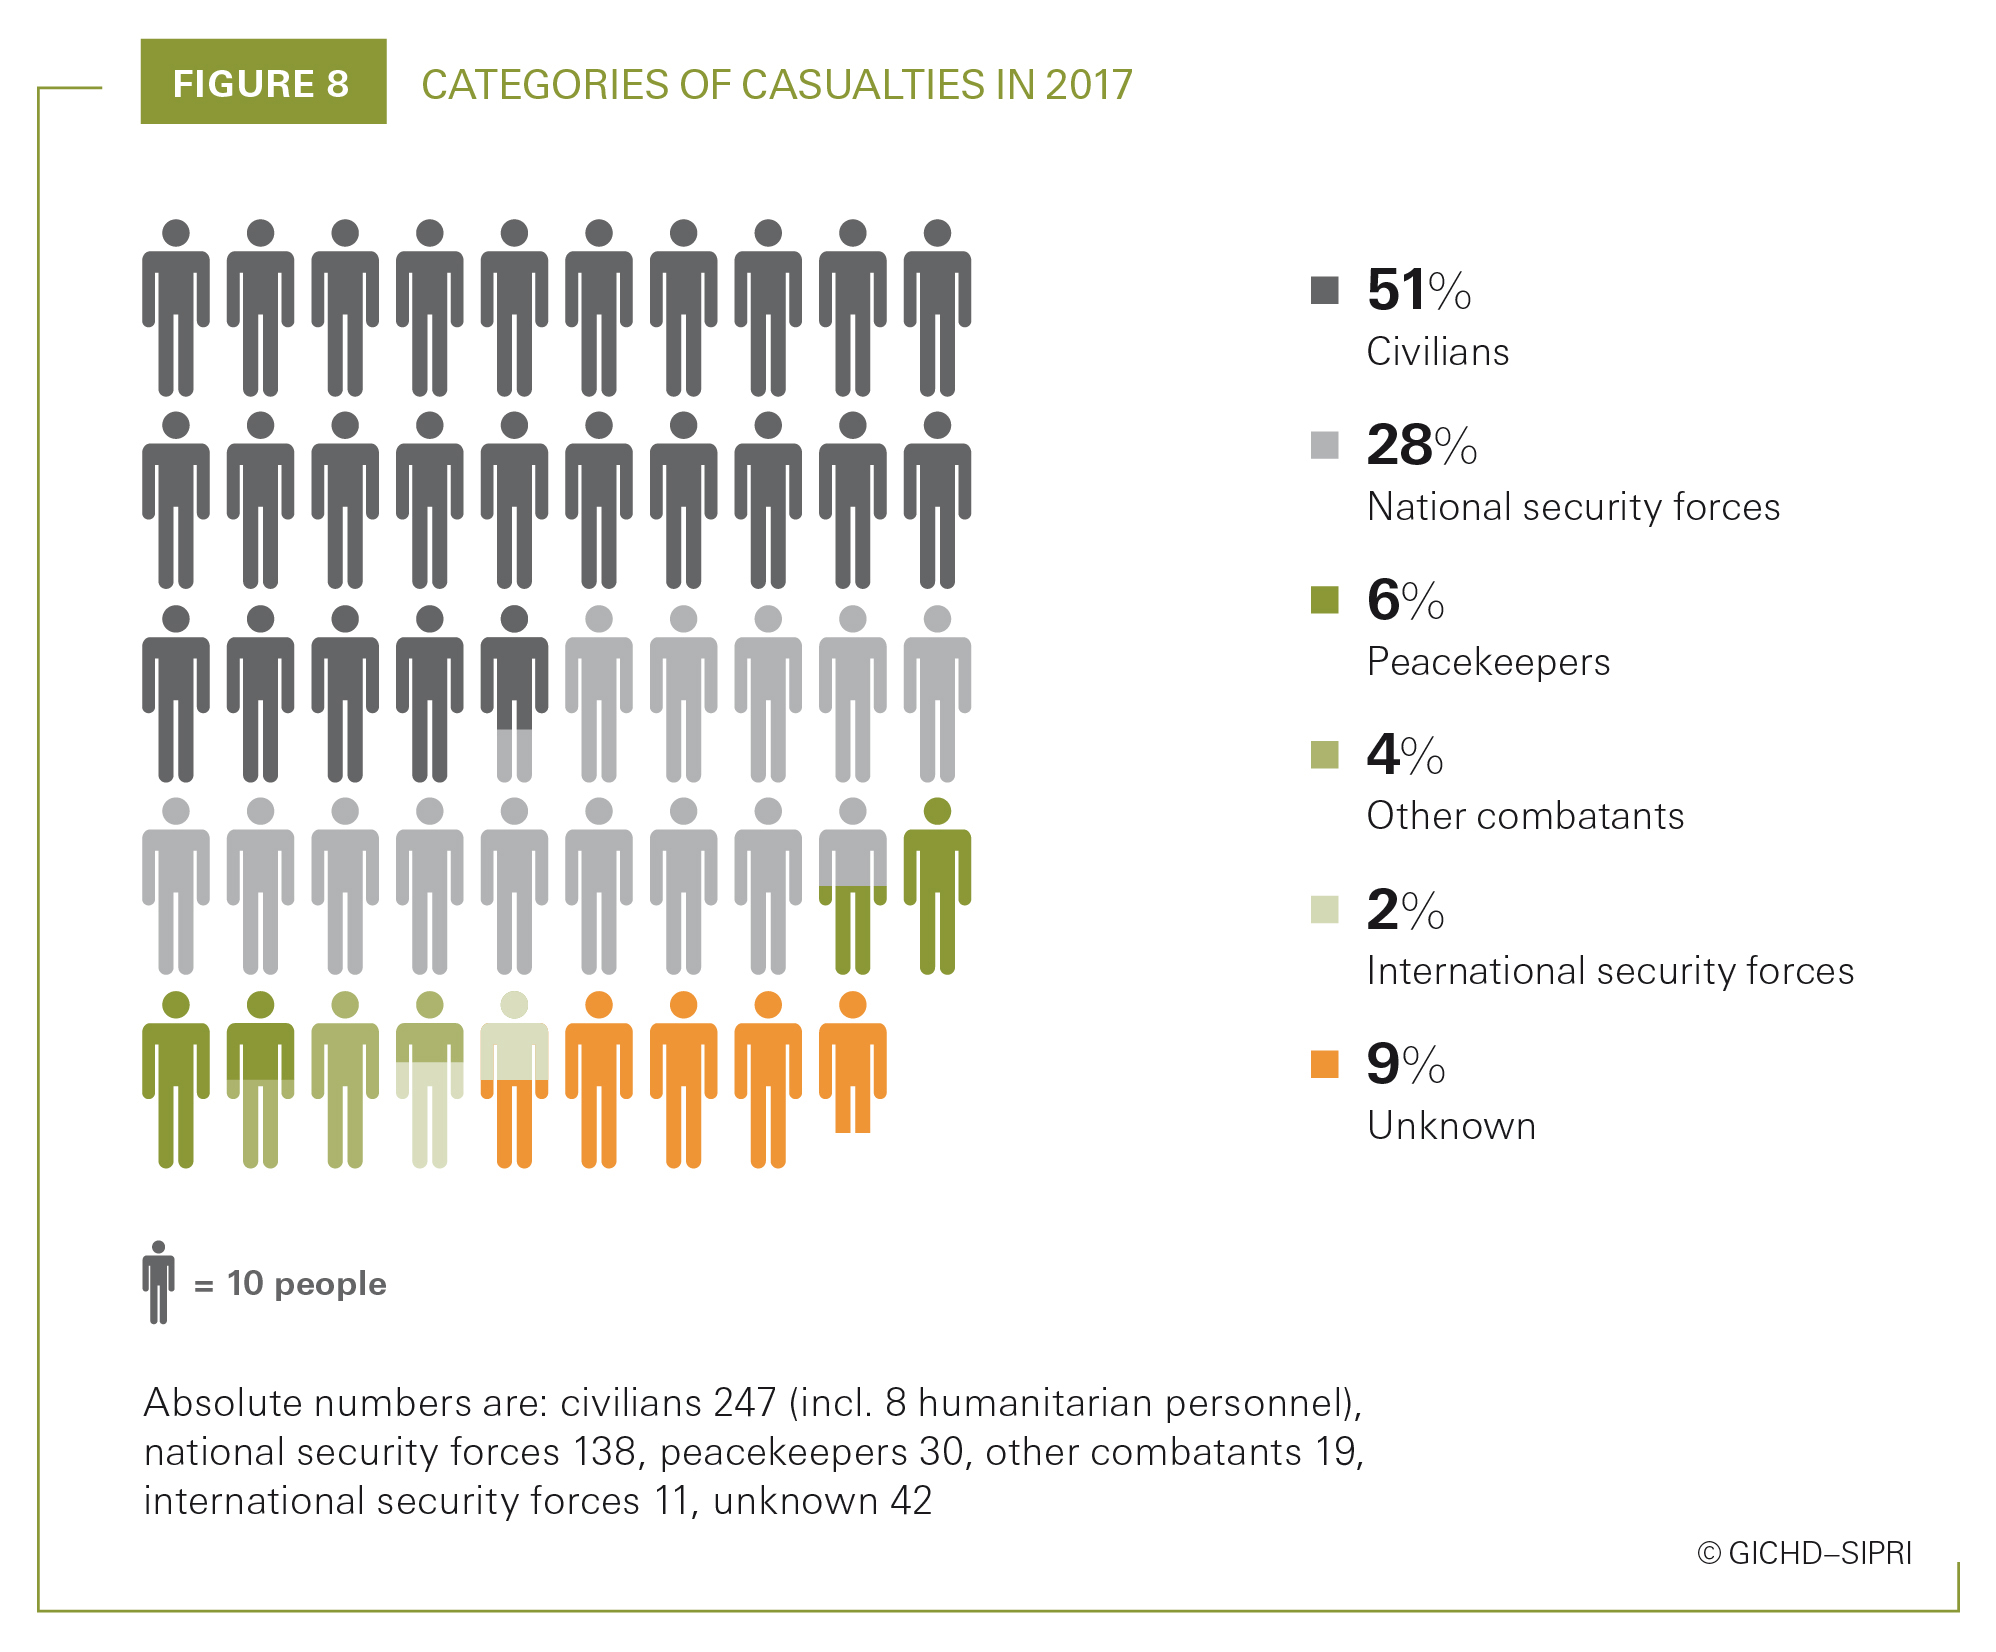 Categories of casualties in 2017